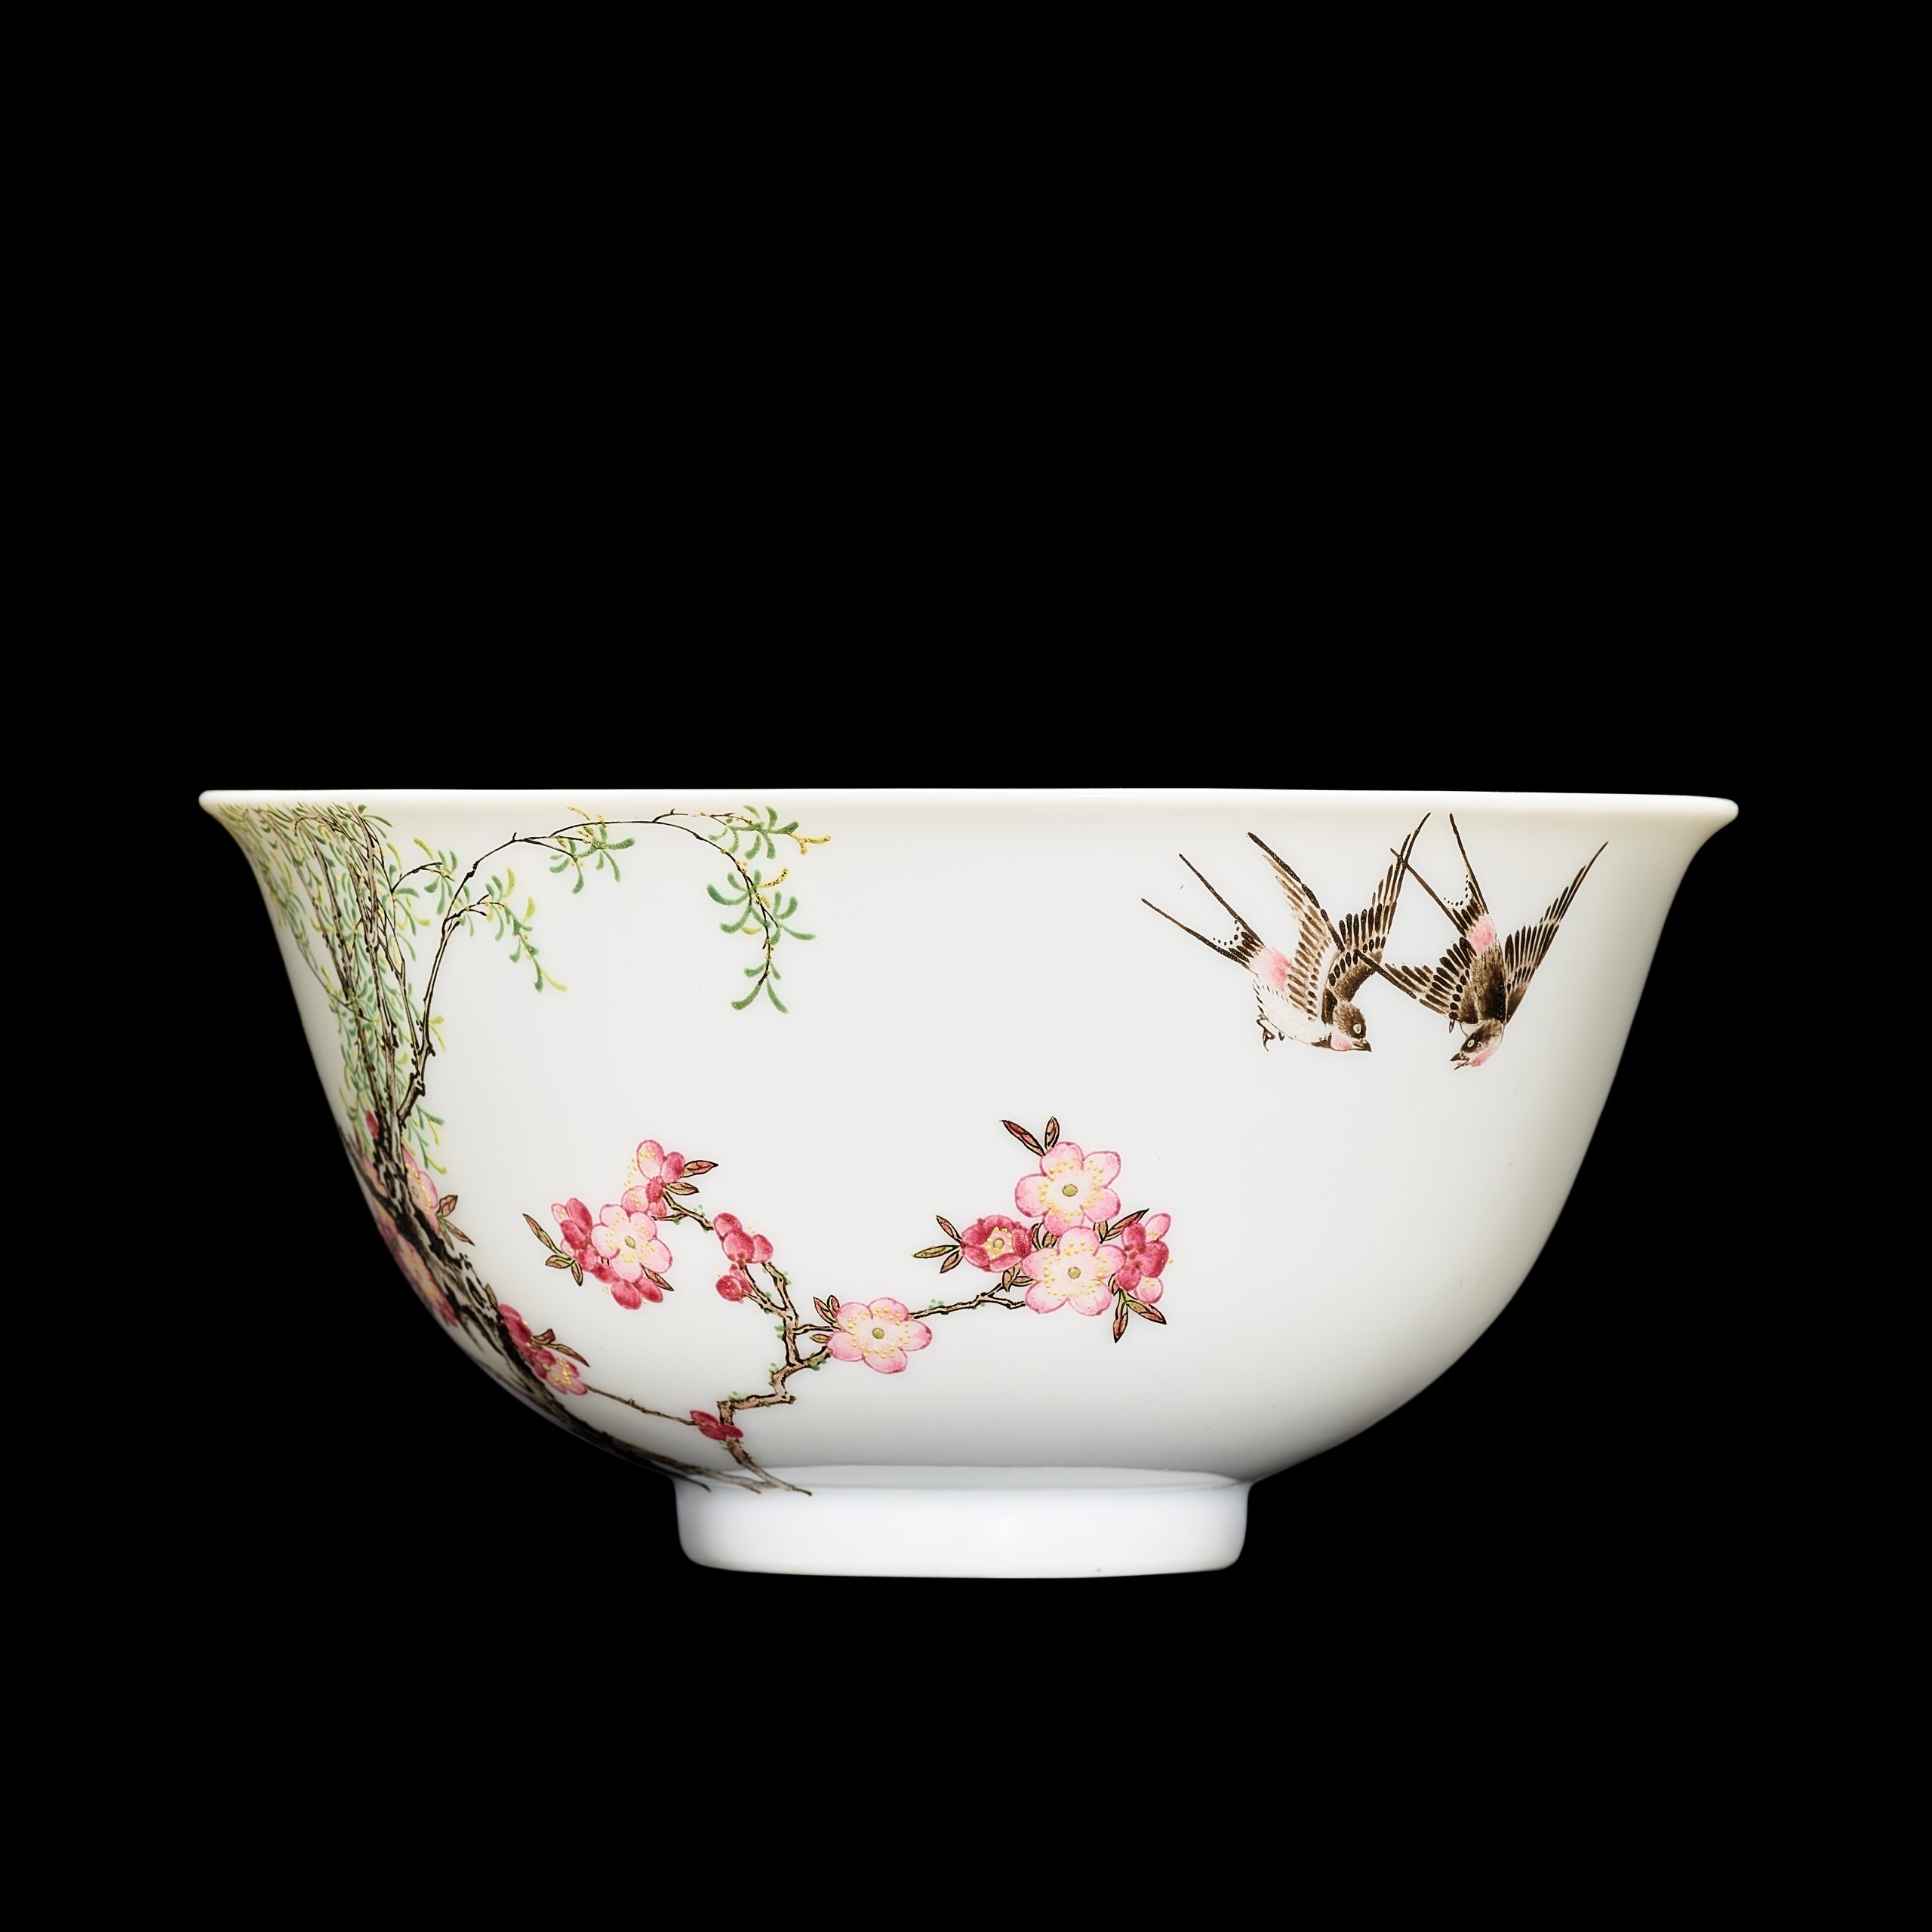 Antica porcellana cinese. Una ciotola rara venduta per 25 milioni da Sotheby’s Hong Kong